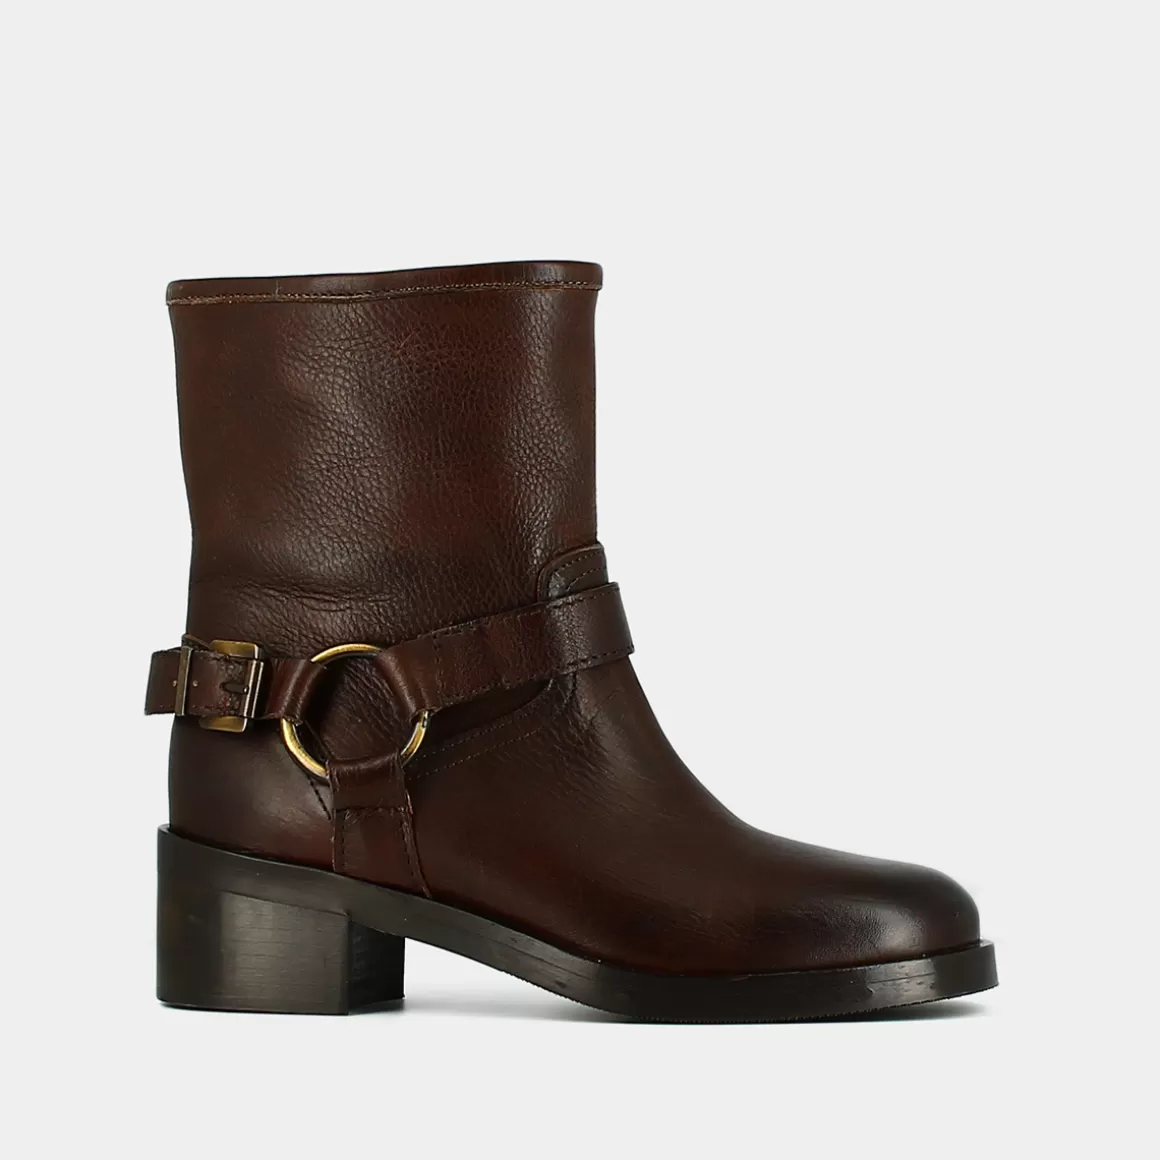 Buckle boots<Jonak Online